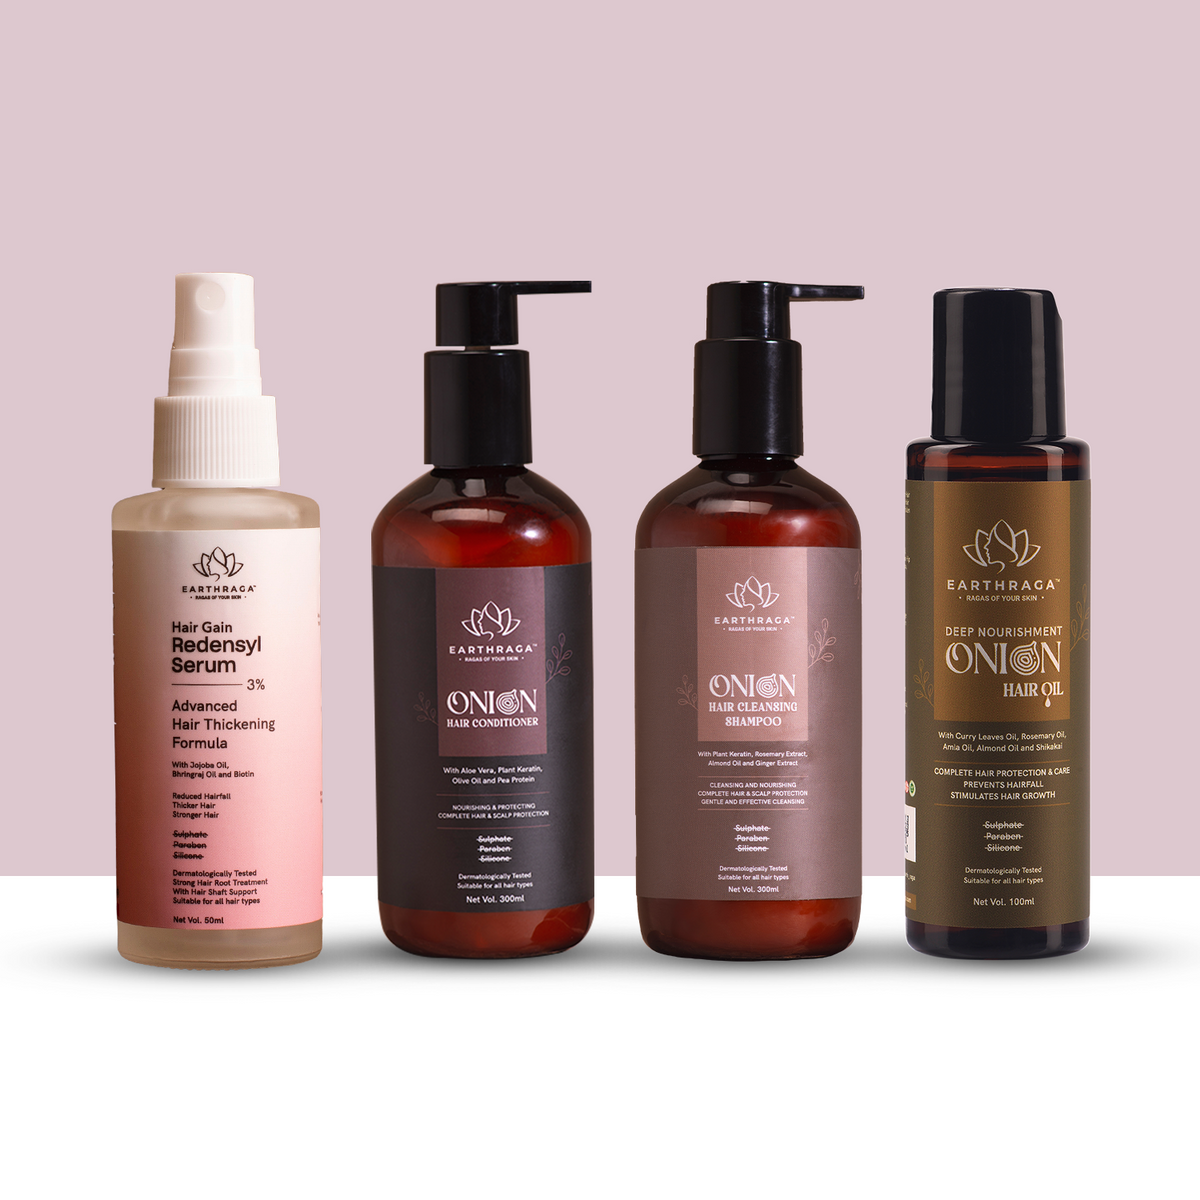 Hair Care Kit- Onion Hair Cleansing Shampoo, Onion Hair Conditioner, Deep Nourishment Onion Hair Oil and Hair Gain Redensyl serum